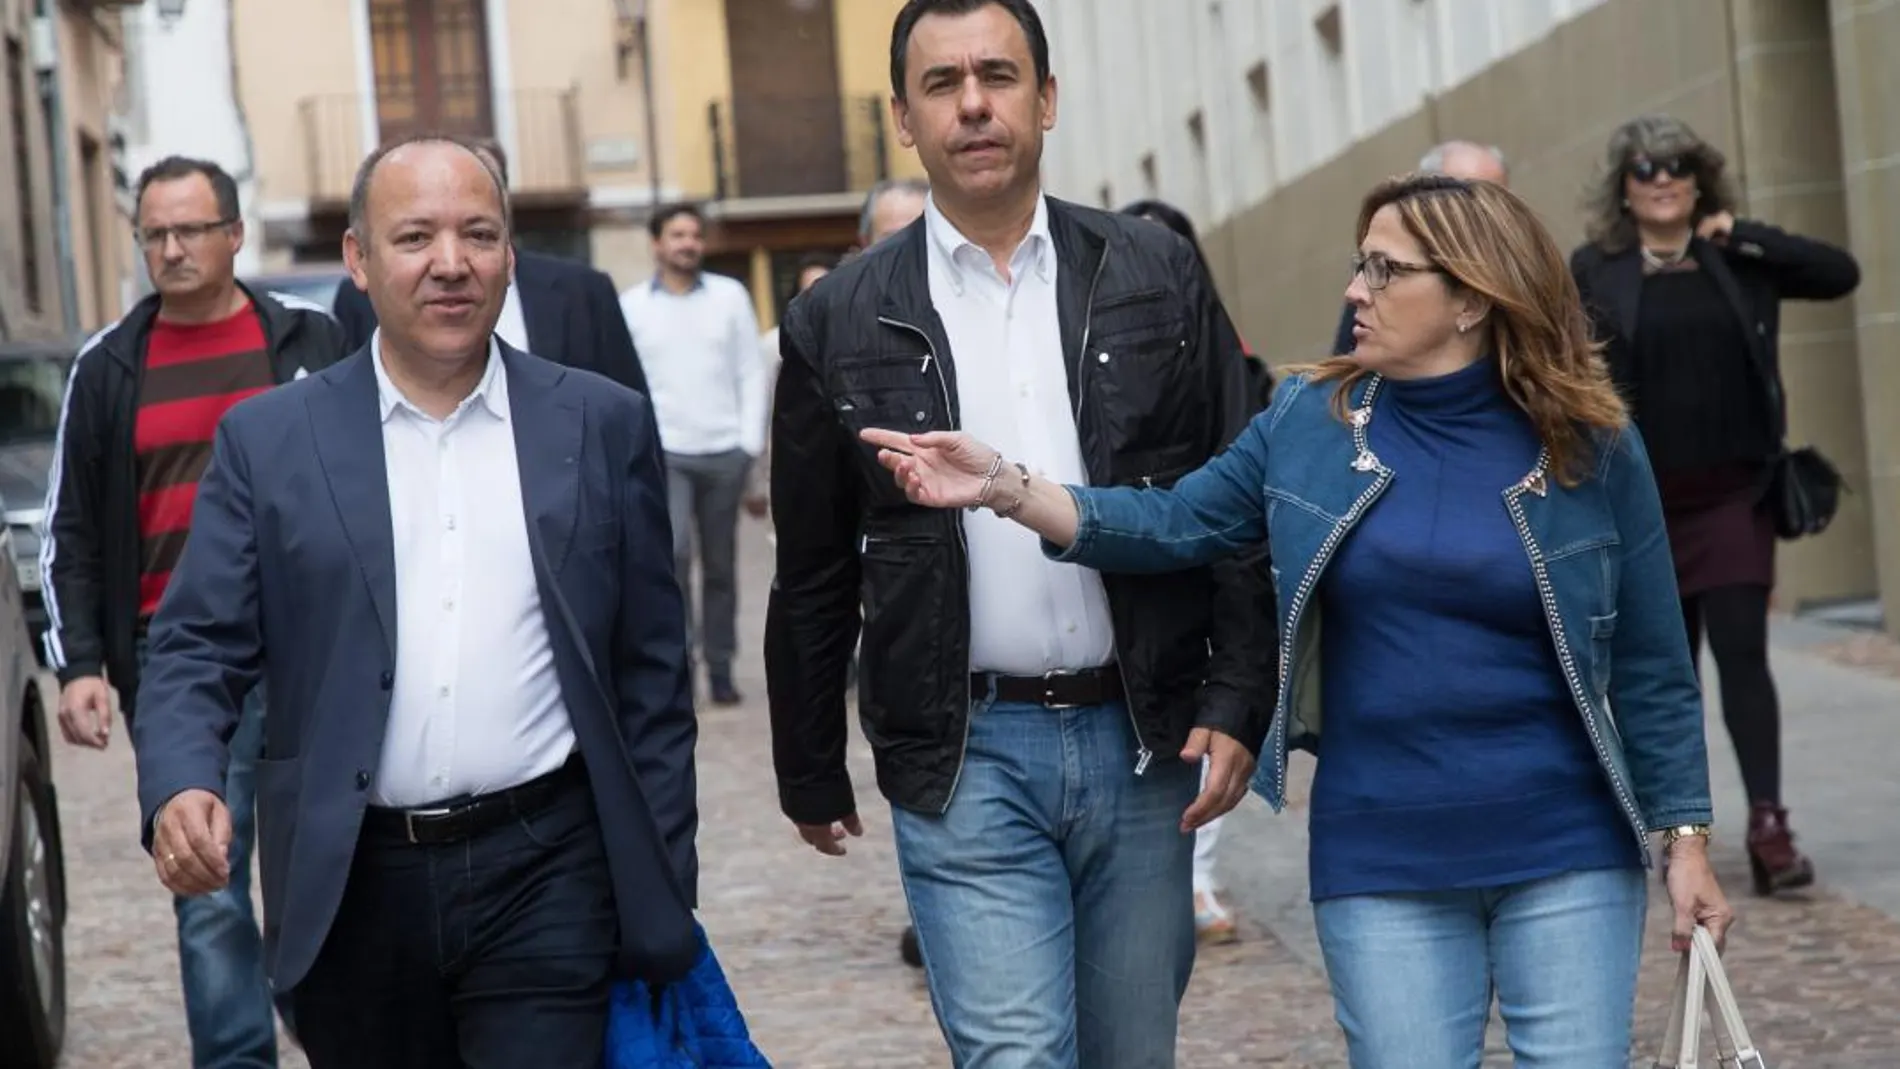 José María Barrios, Martínez Maíllo y Mayte Martín llegan a la Junta Directiva